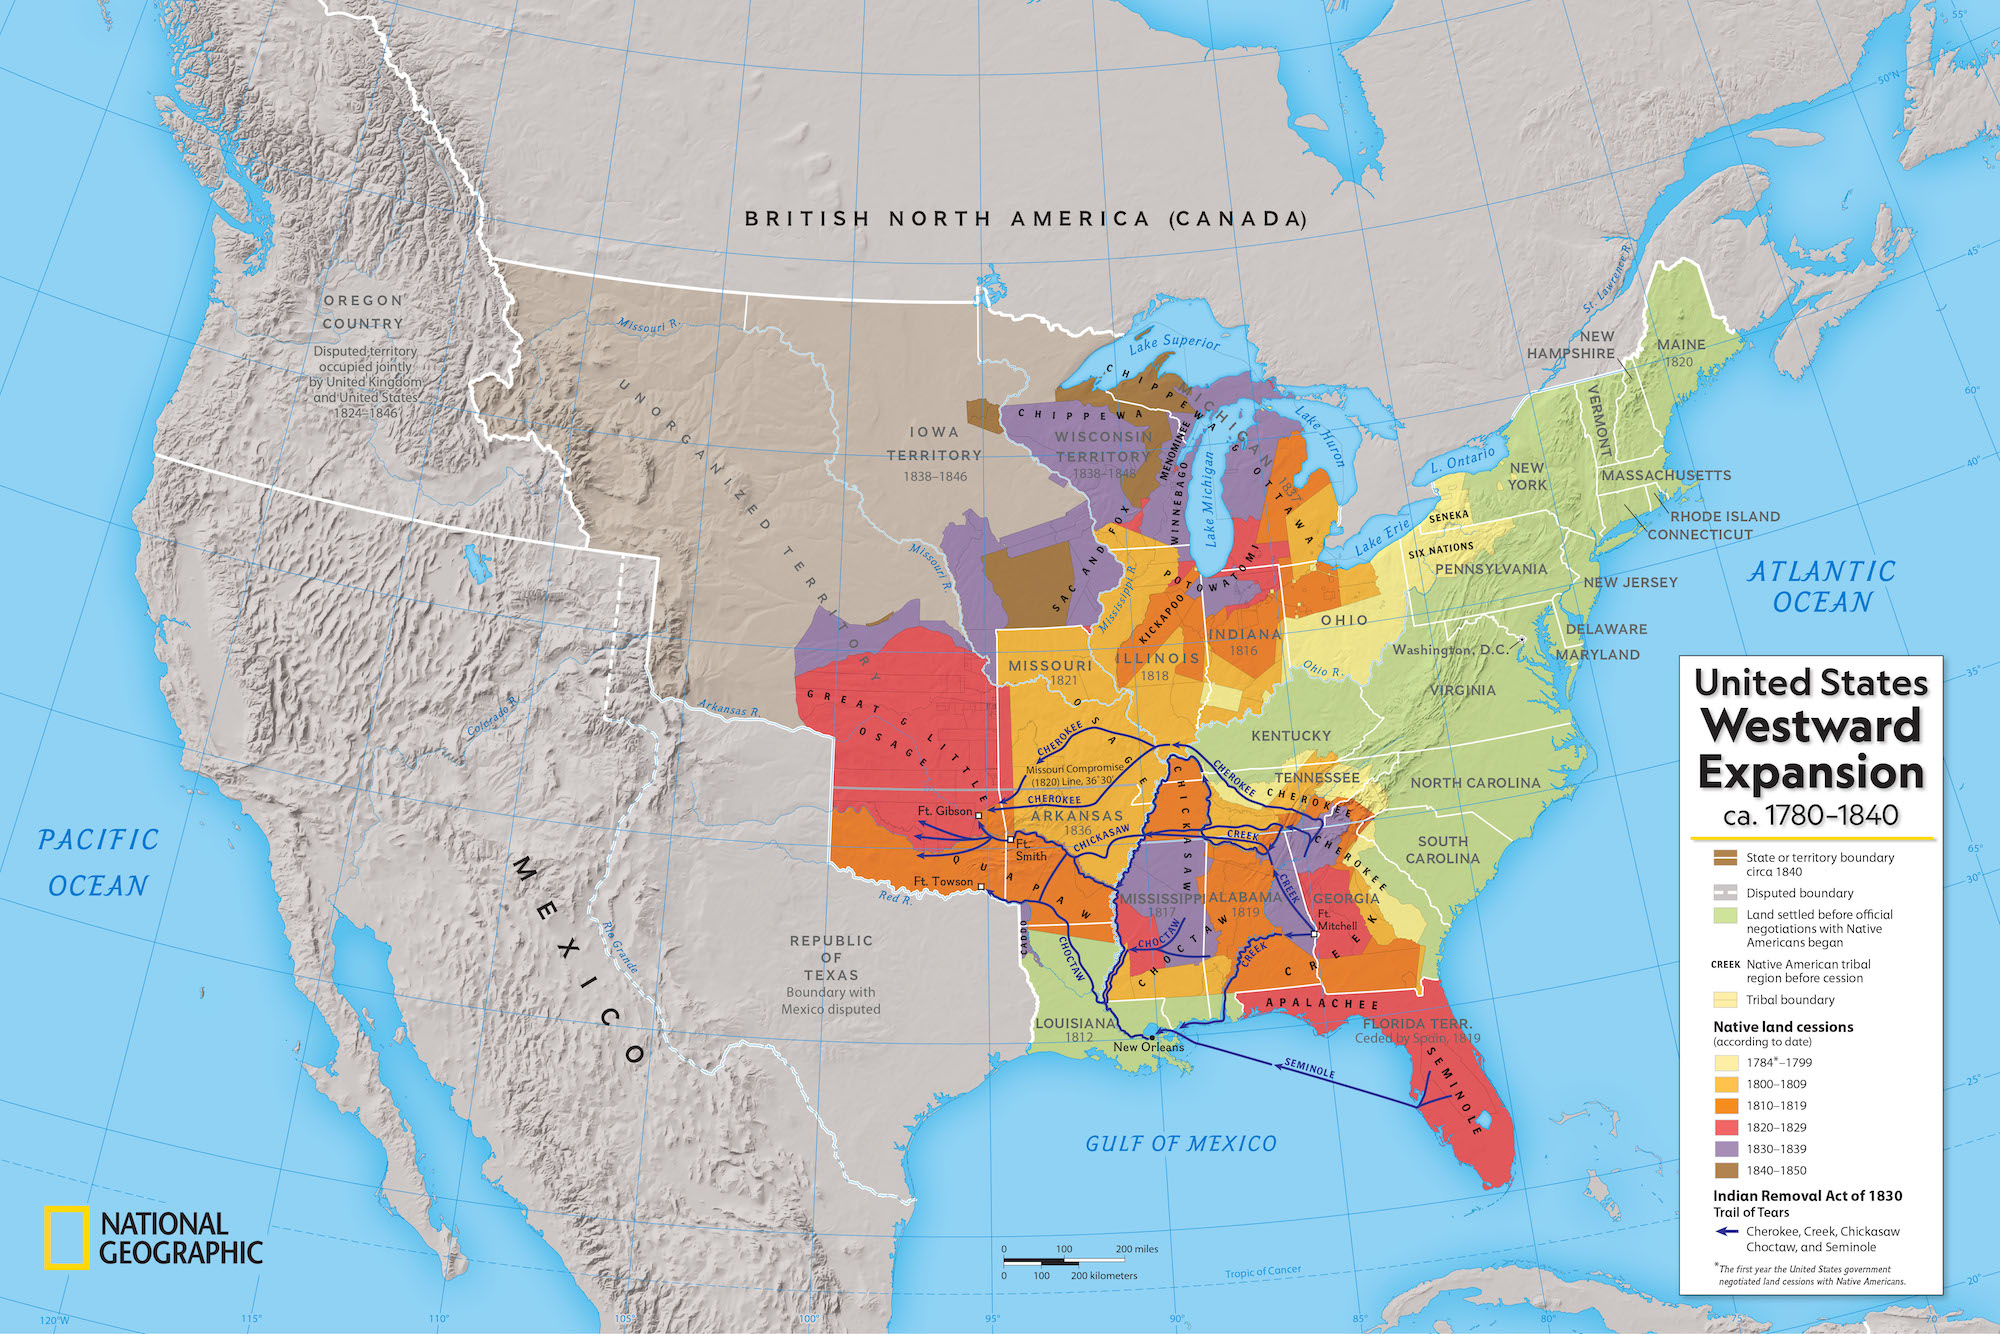 https://images.nationalgeographic.org/image/upload/v1638892465/EducationHub/photos/united-states-westward-expansion.jpg